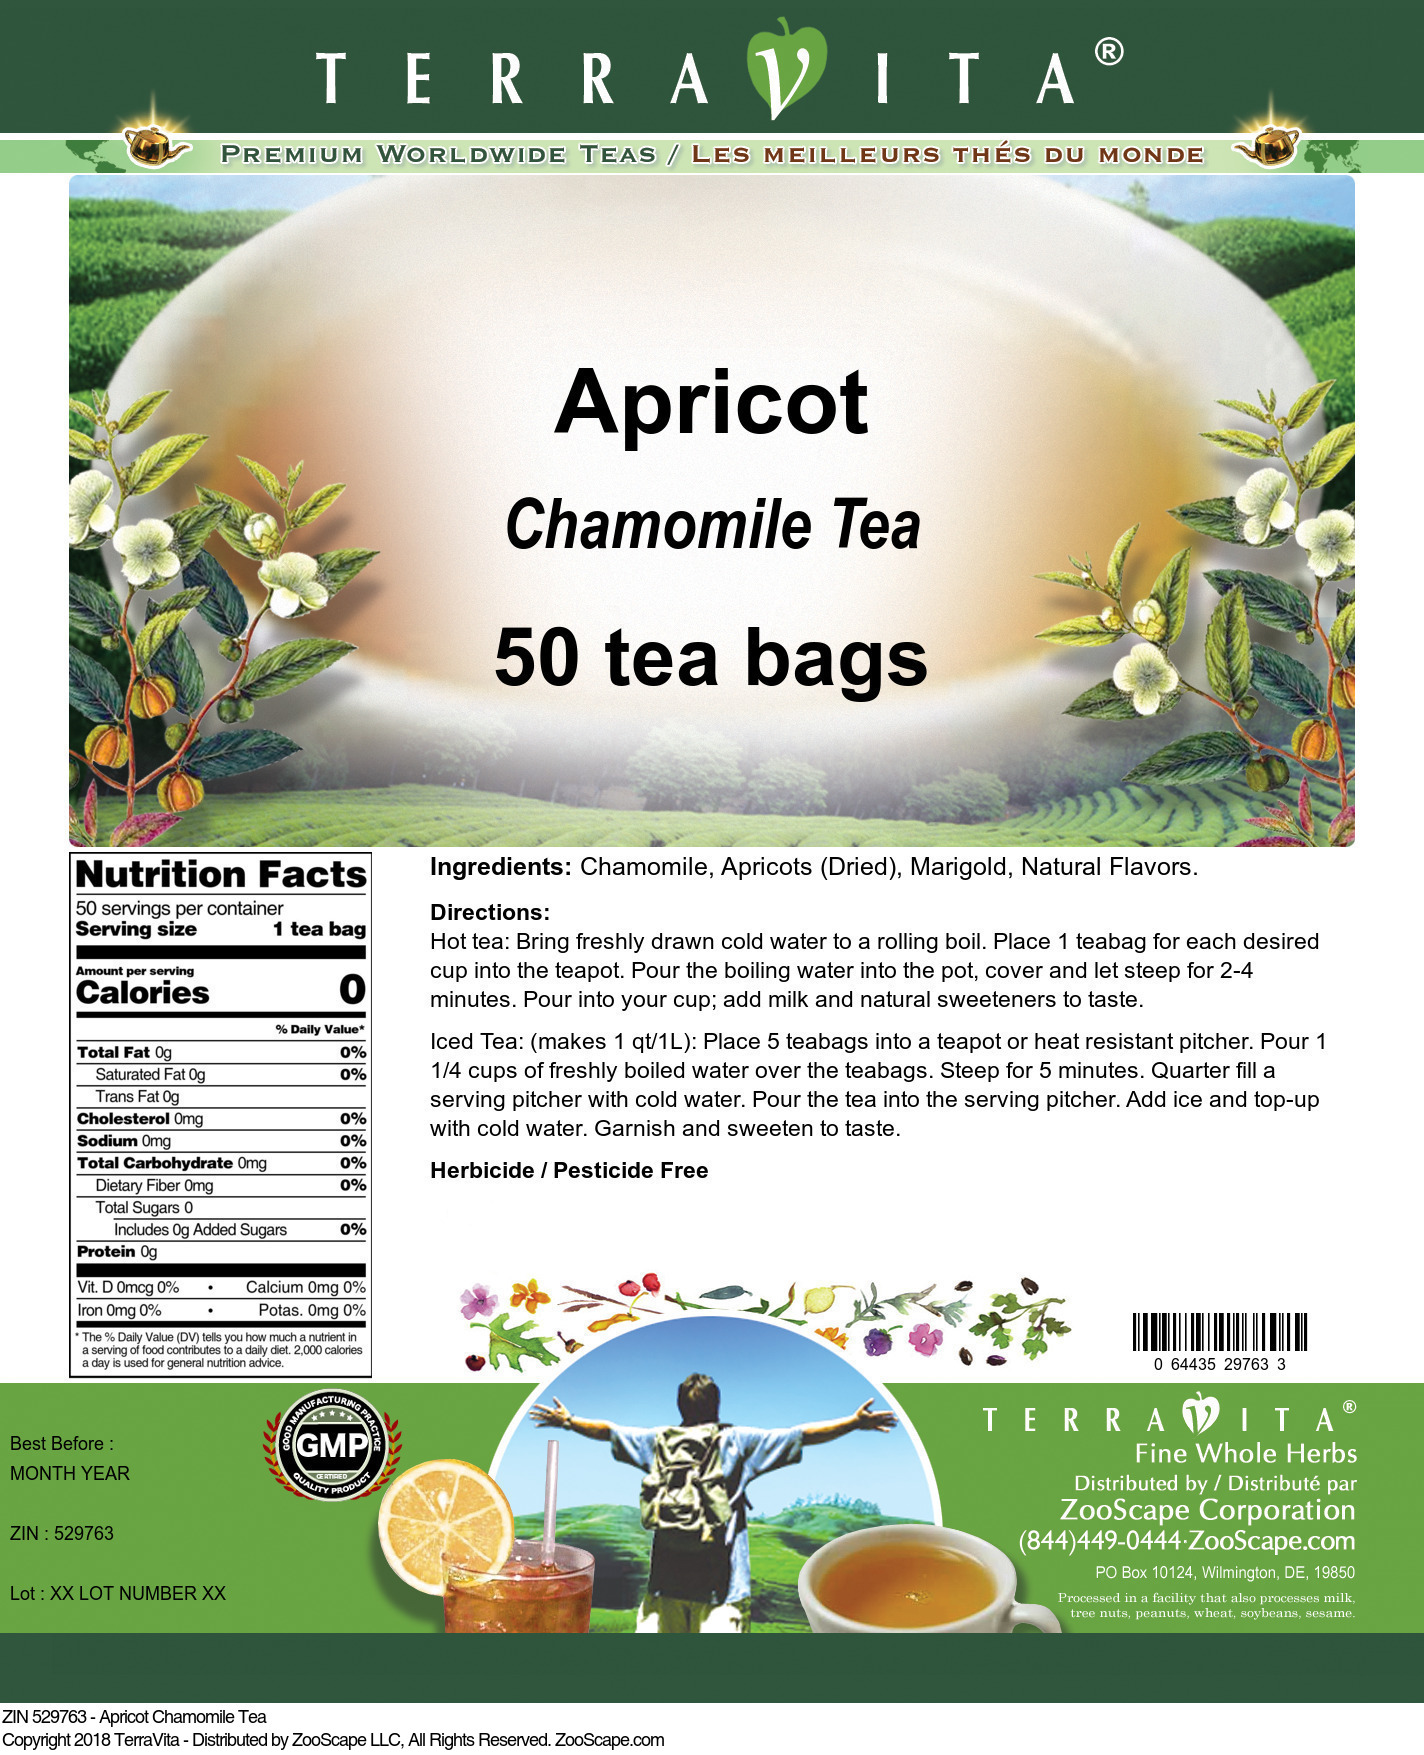 Apricot Chamomile Tea - Label